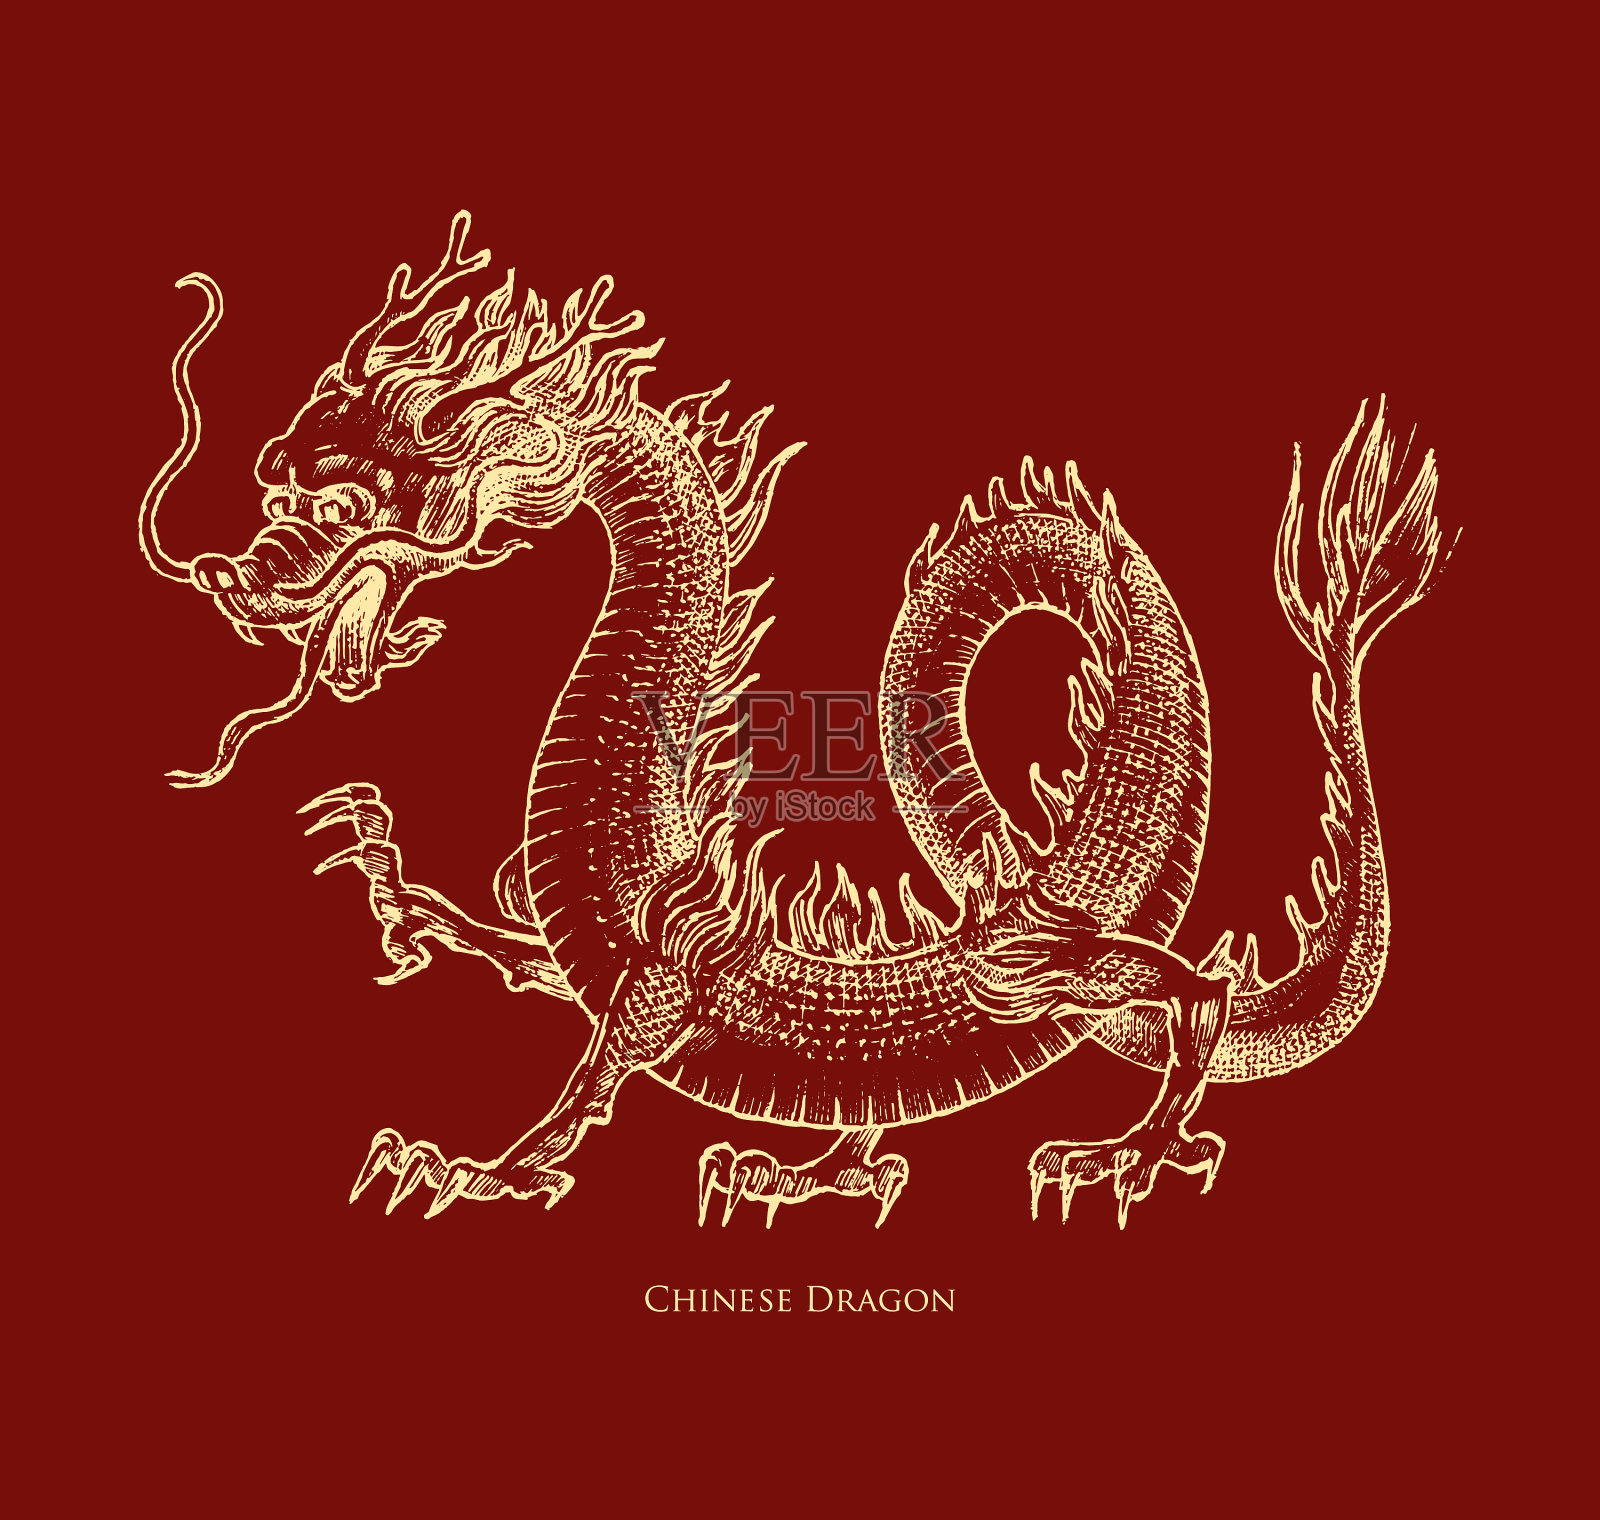 中国龙是一种神话动物或亚洲动物插画图片素材